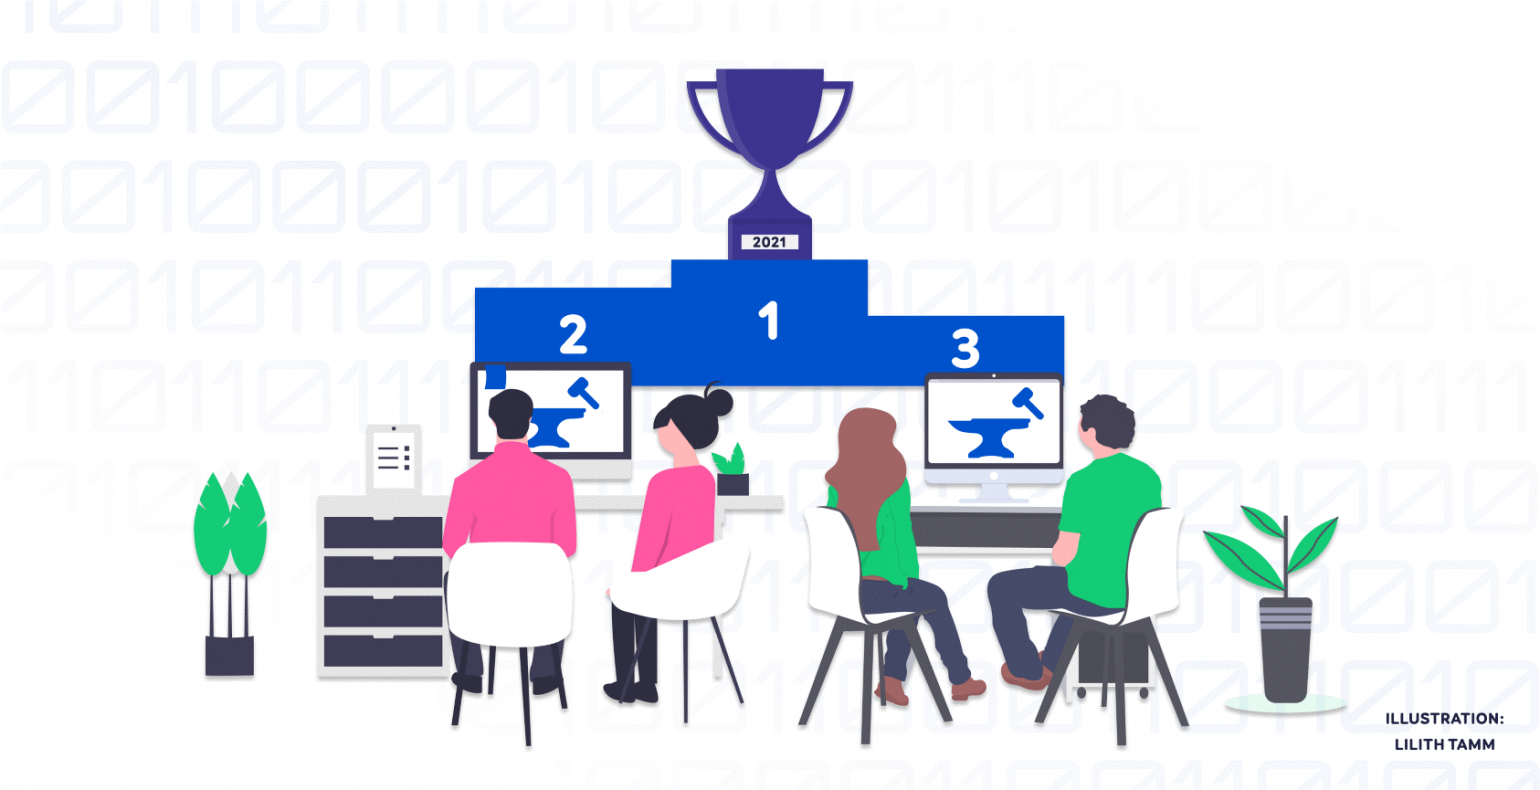 Illustration of four judges deciding on Codegeist hackathon 2021 winners 